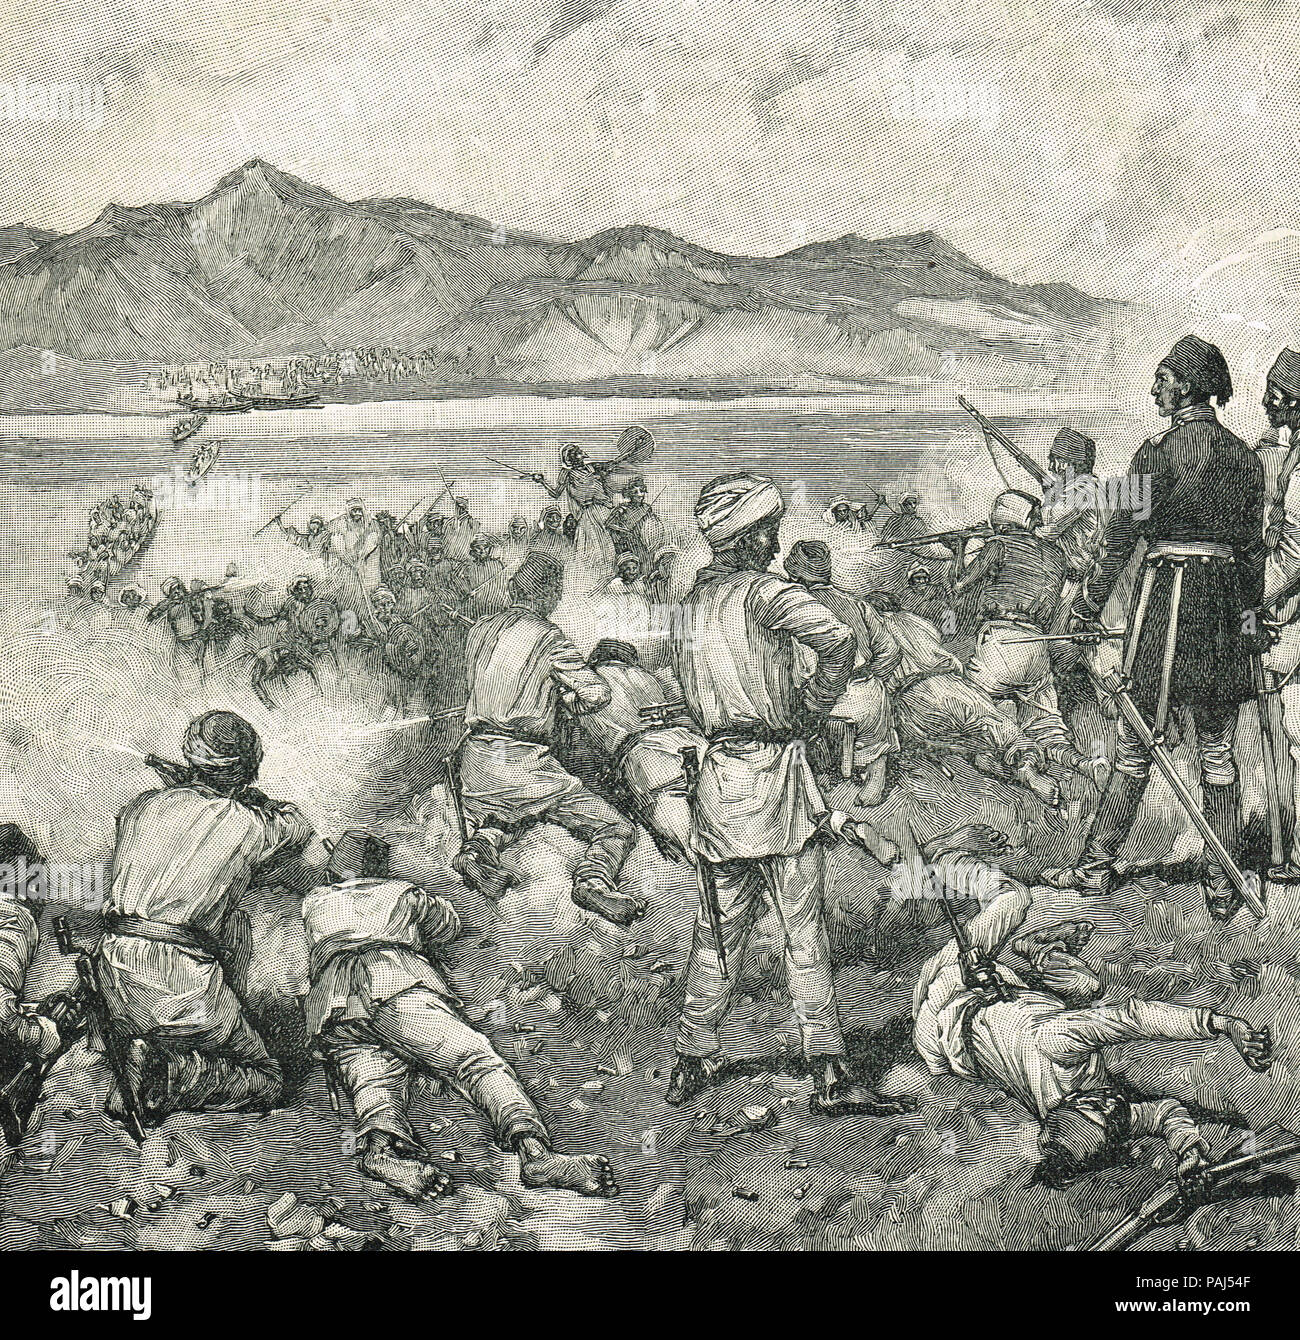 La lotta in Kalakala, inizio maggio 1884, Abu Girgeh assalto a Khartoum, sconfitti dal generale Gordon, inizio nell'assedio di Khartoum Foto Stock